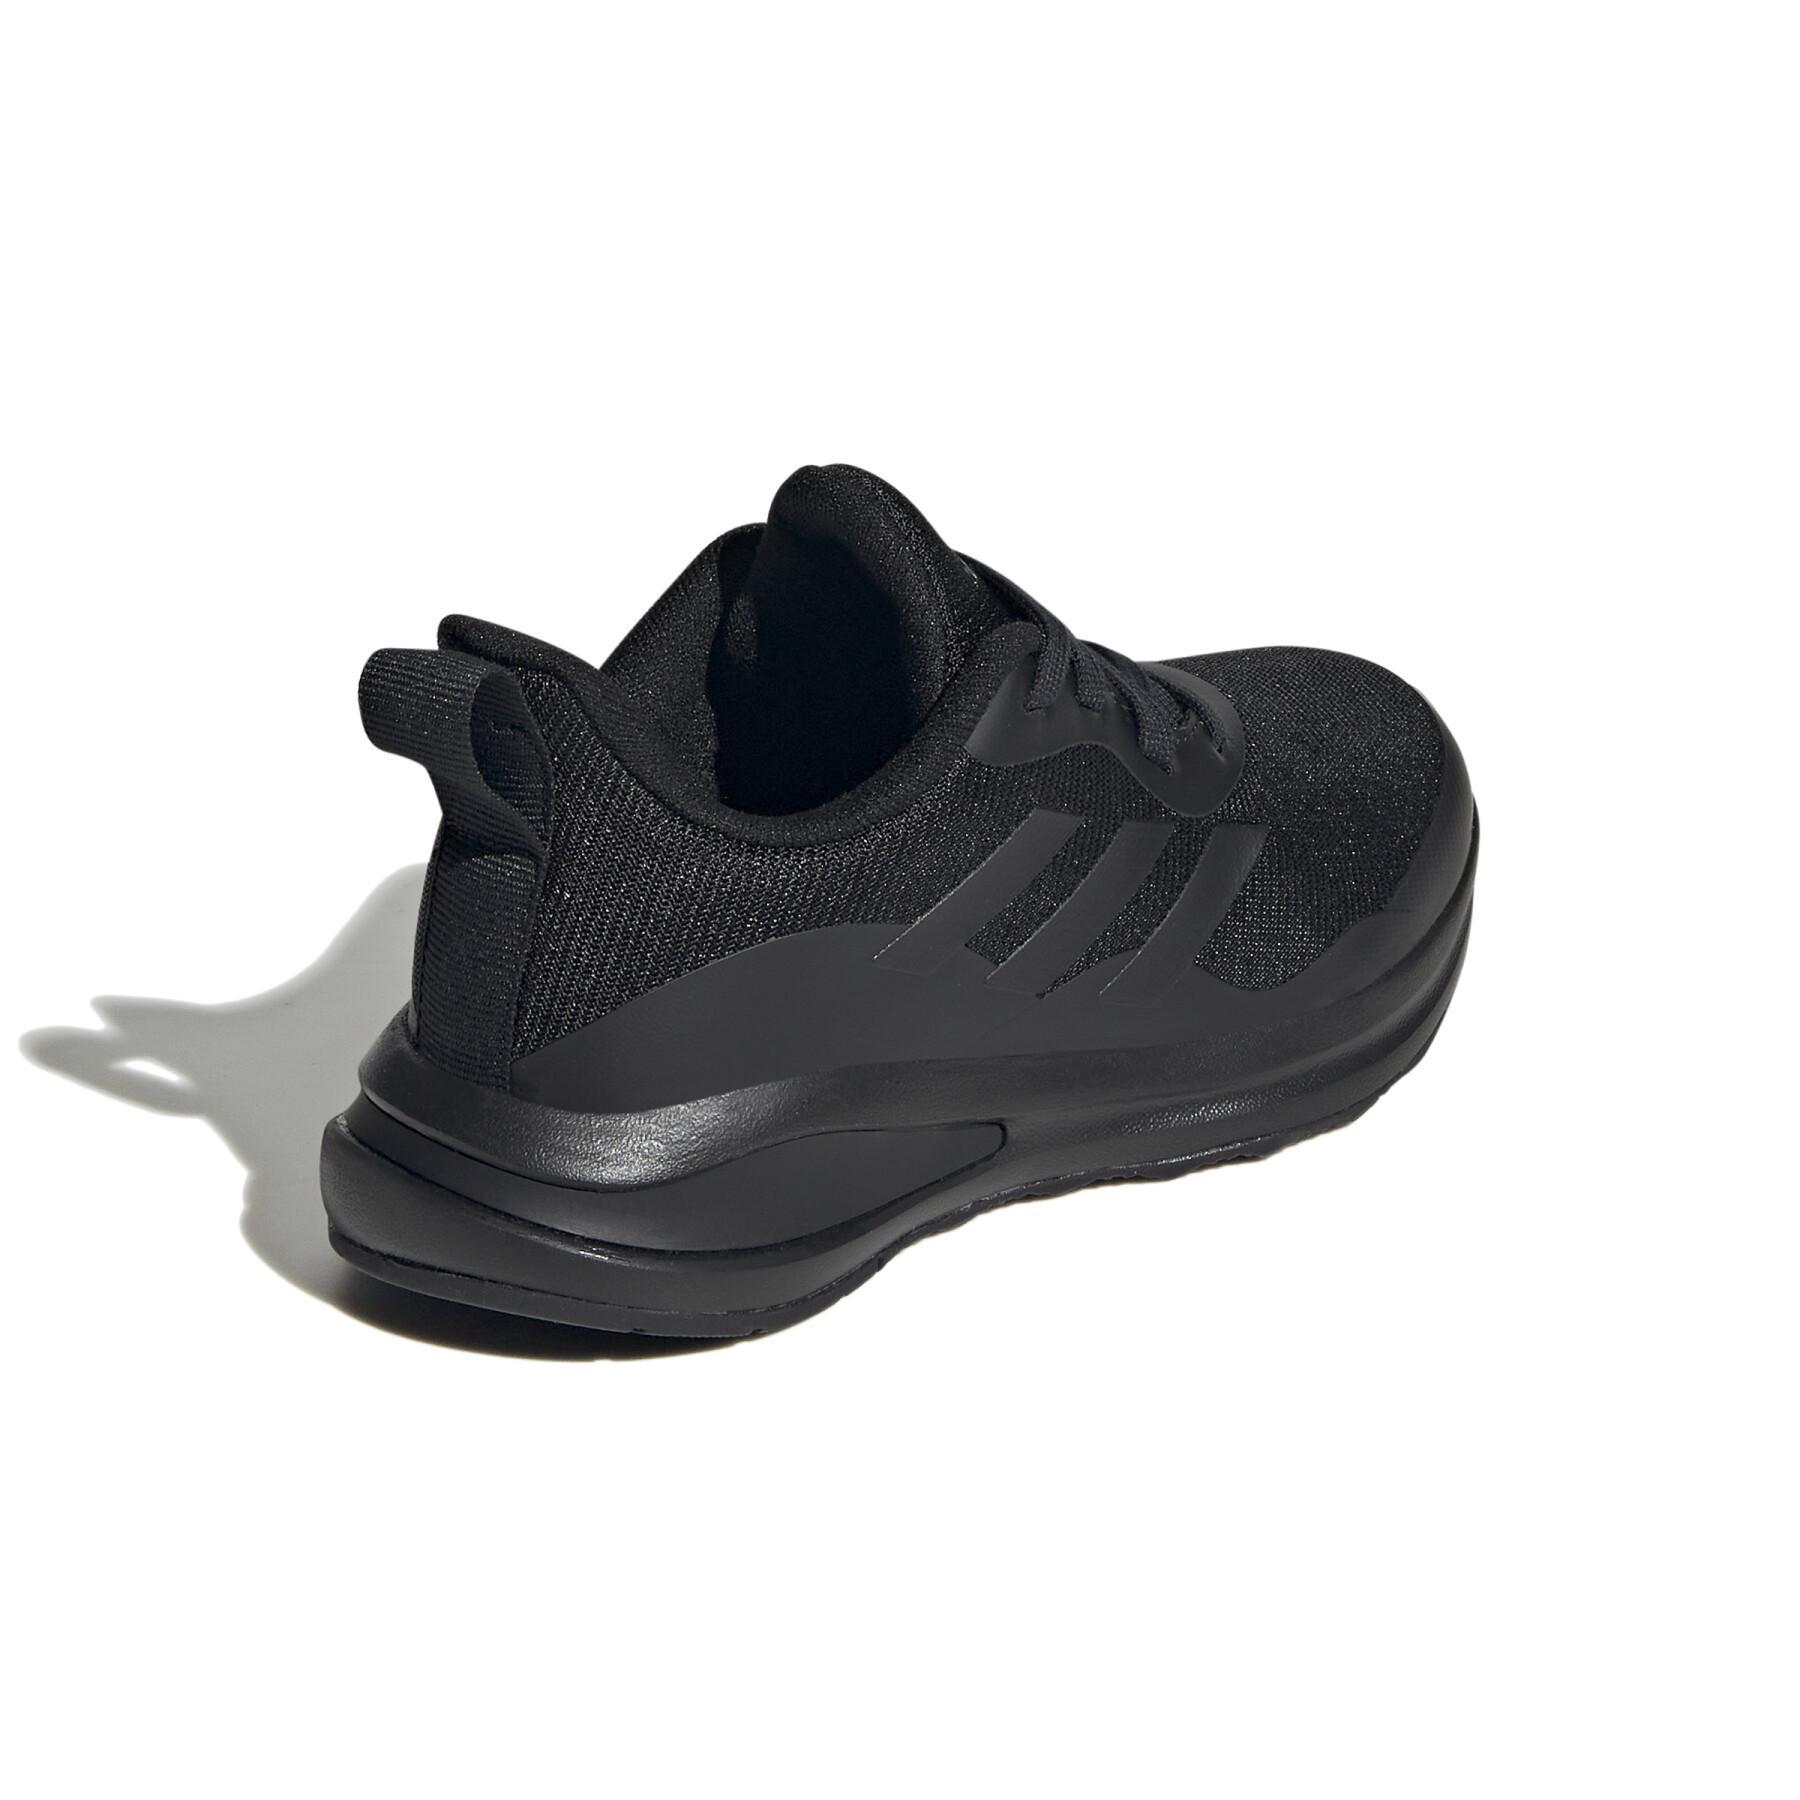 Buty do biegania dla dzieci adidas FortaRun